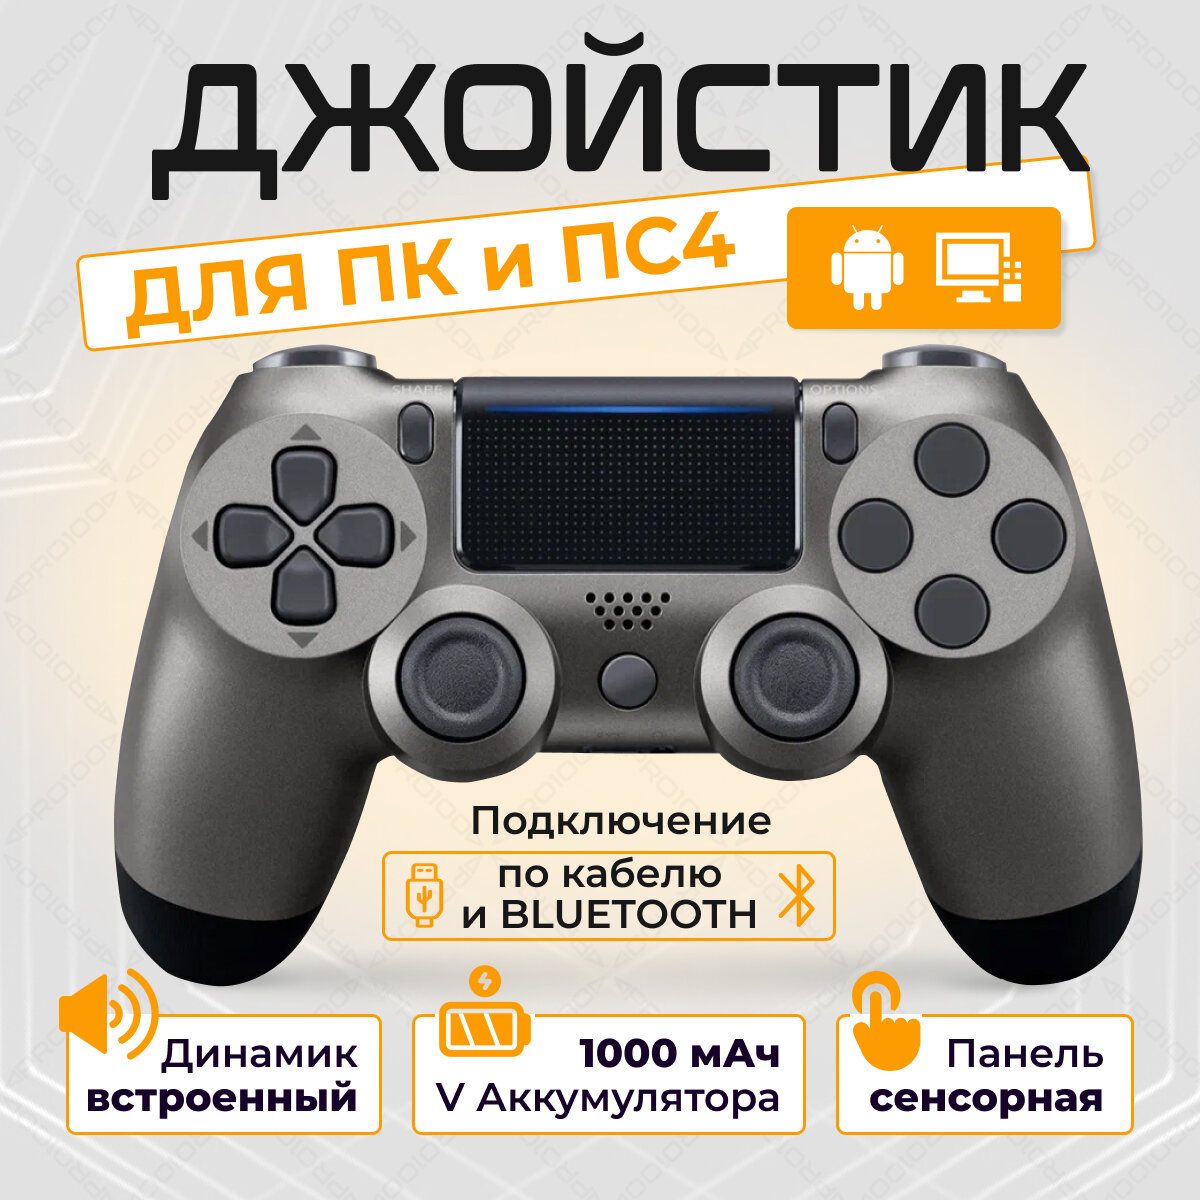 Беспроводной геймпад для PS4 и ПК / Джойстик Bluetooth для Playstation 4, Apple (IPhone, IPad), Androind, ПК - темно-серый